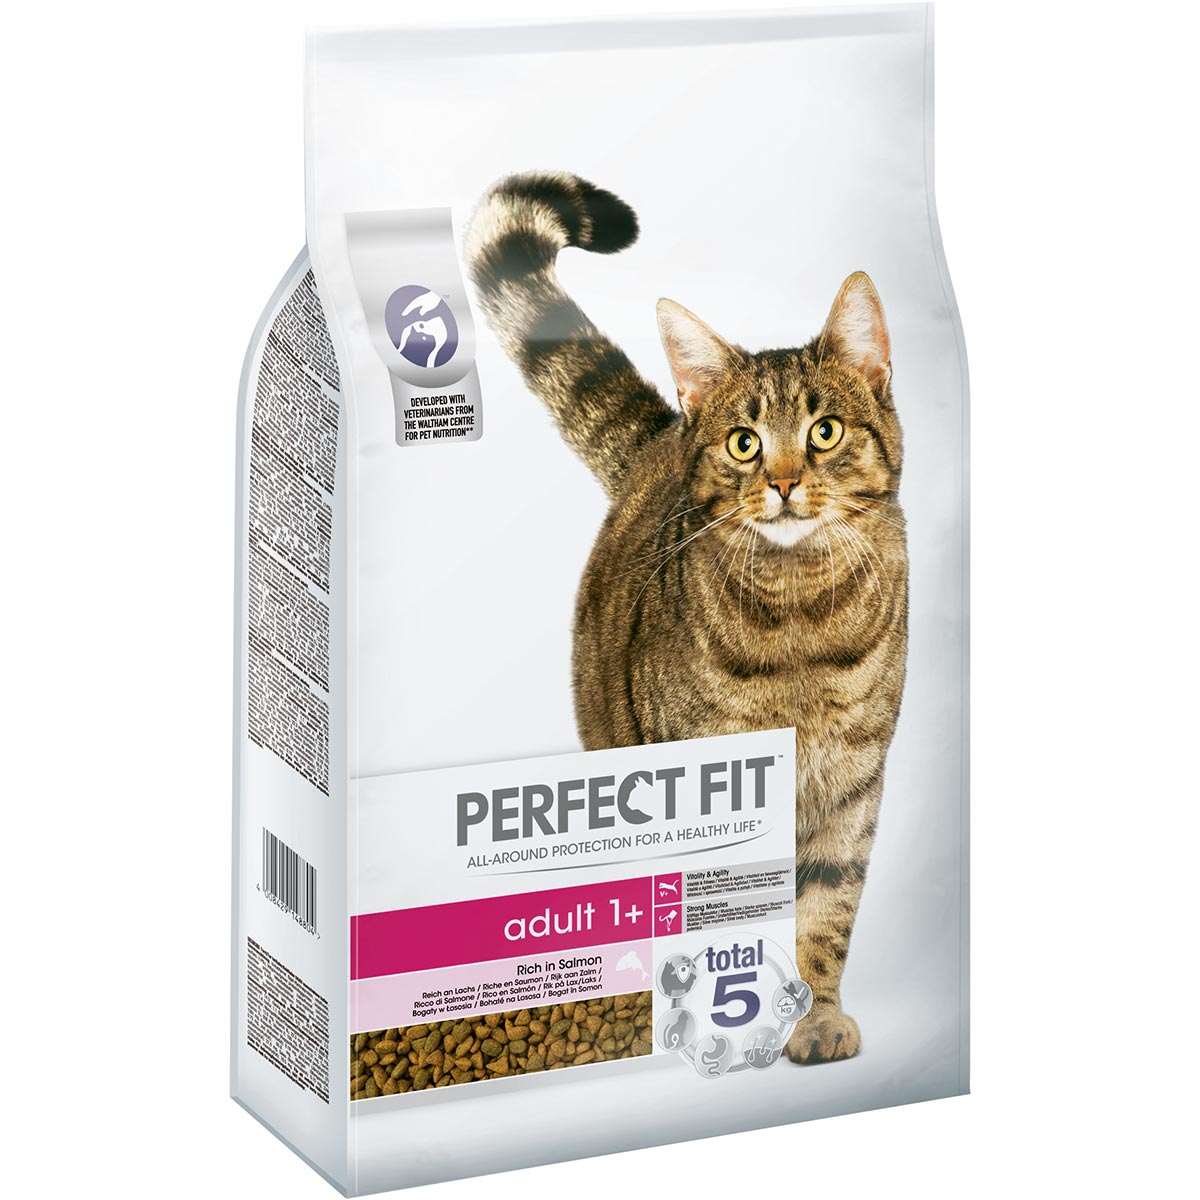 Perfect Fit Katzenfutter Adult 1+ reich an Lachs 7kg